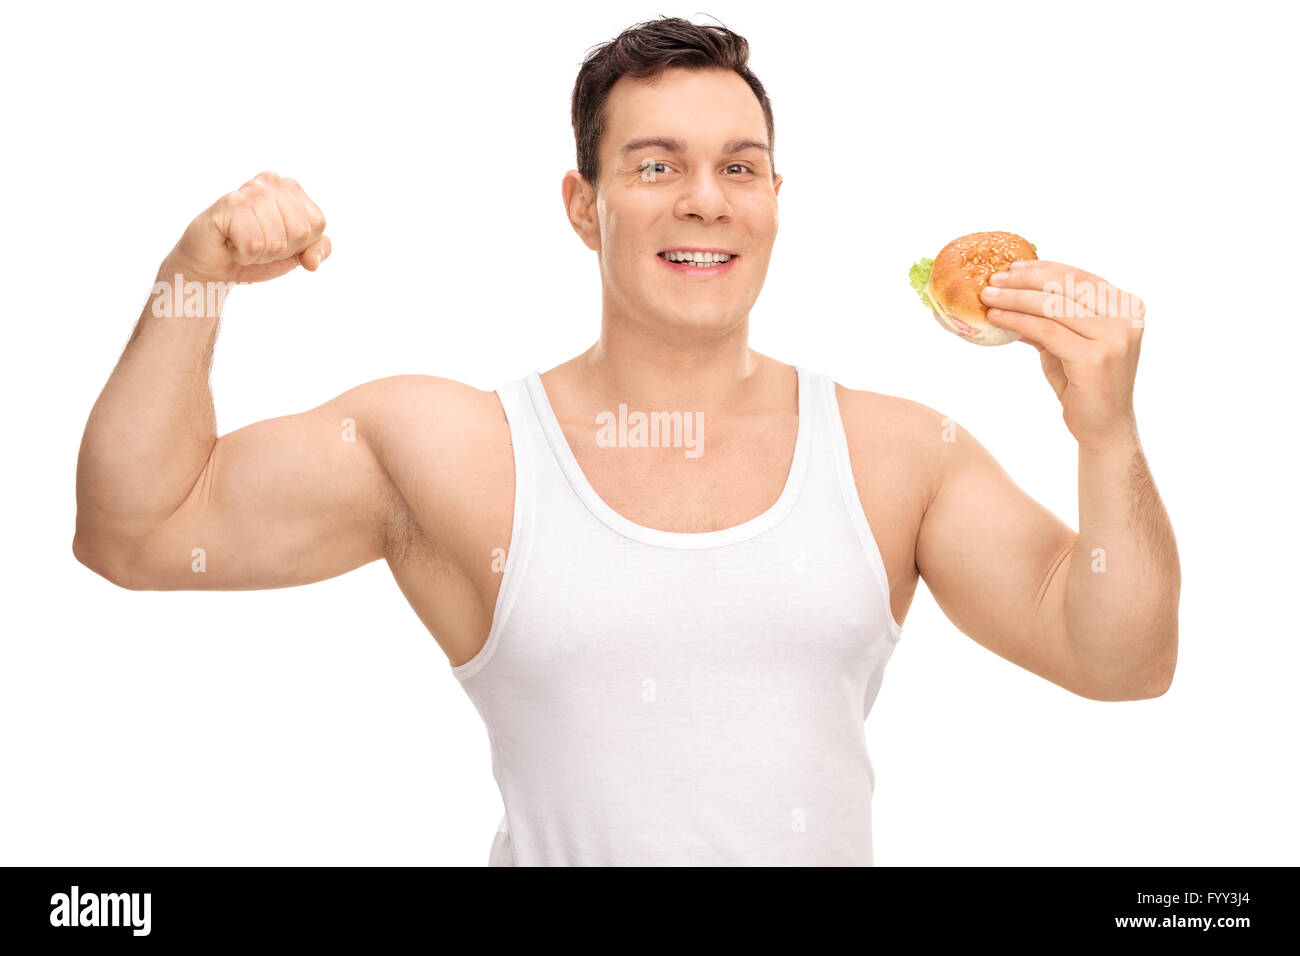 Giovane uomo flettendo il suo bicipite e tenendo un sandwich in altro canto isolato su sfondo bianco Foto Stock